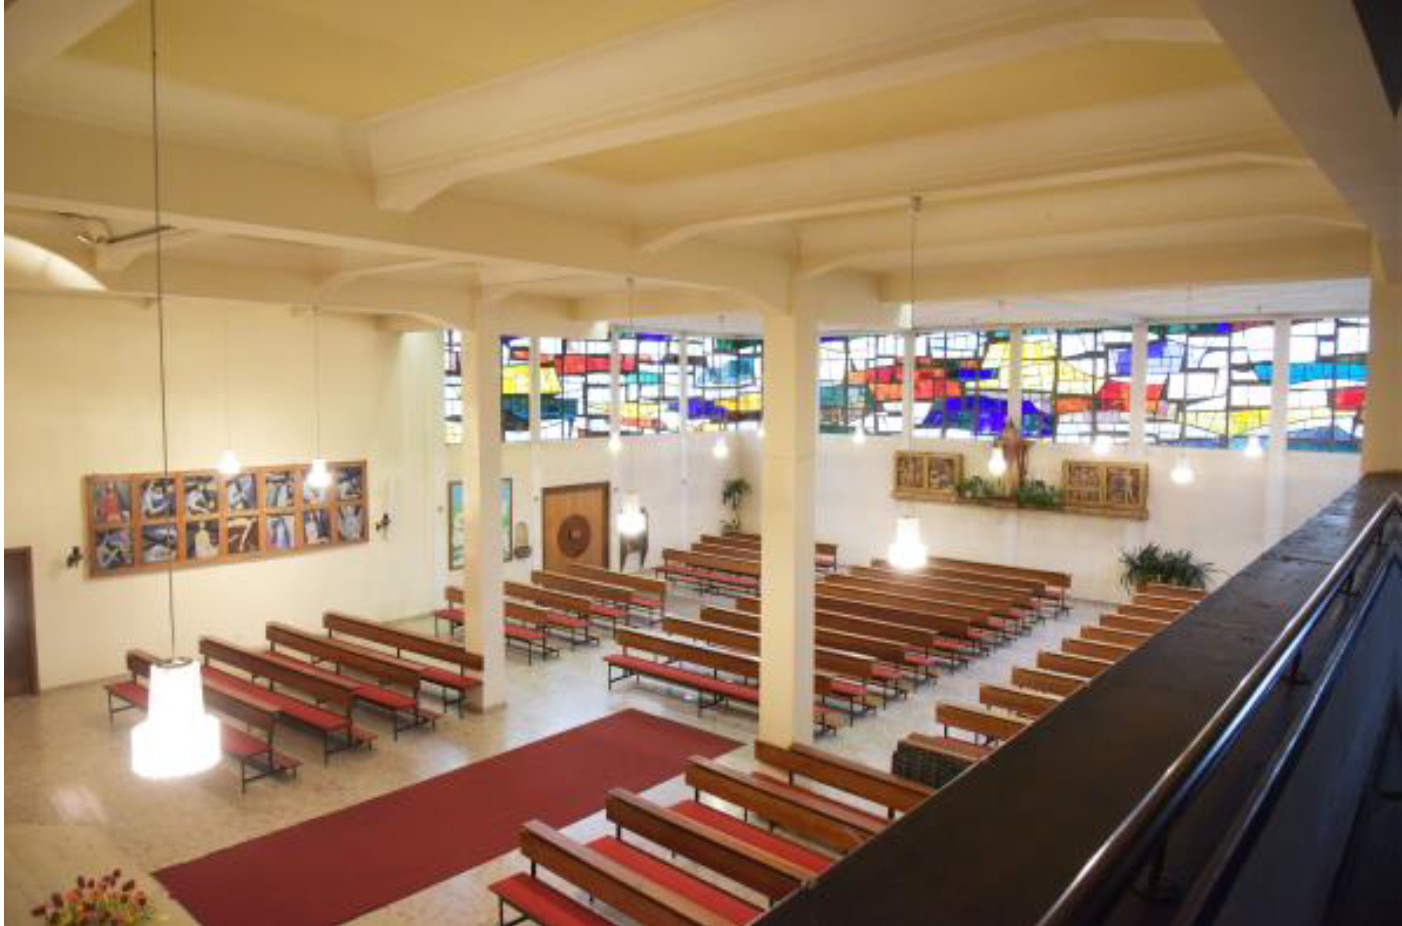 Blick vom Chor (Orgelempore) in den Kirchenraum